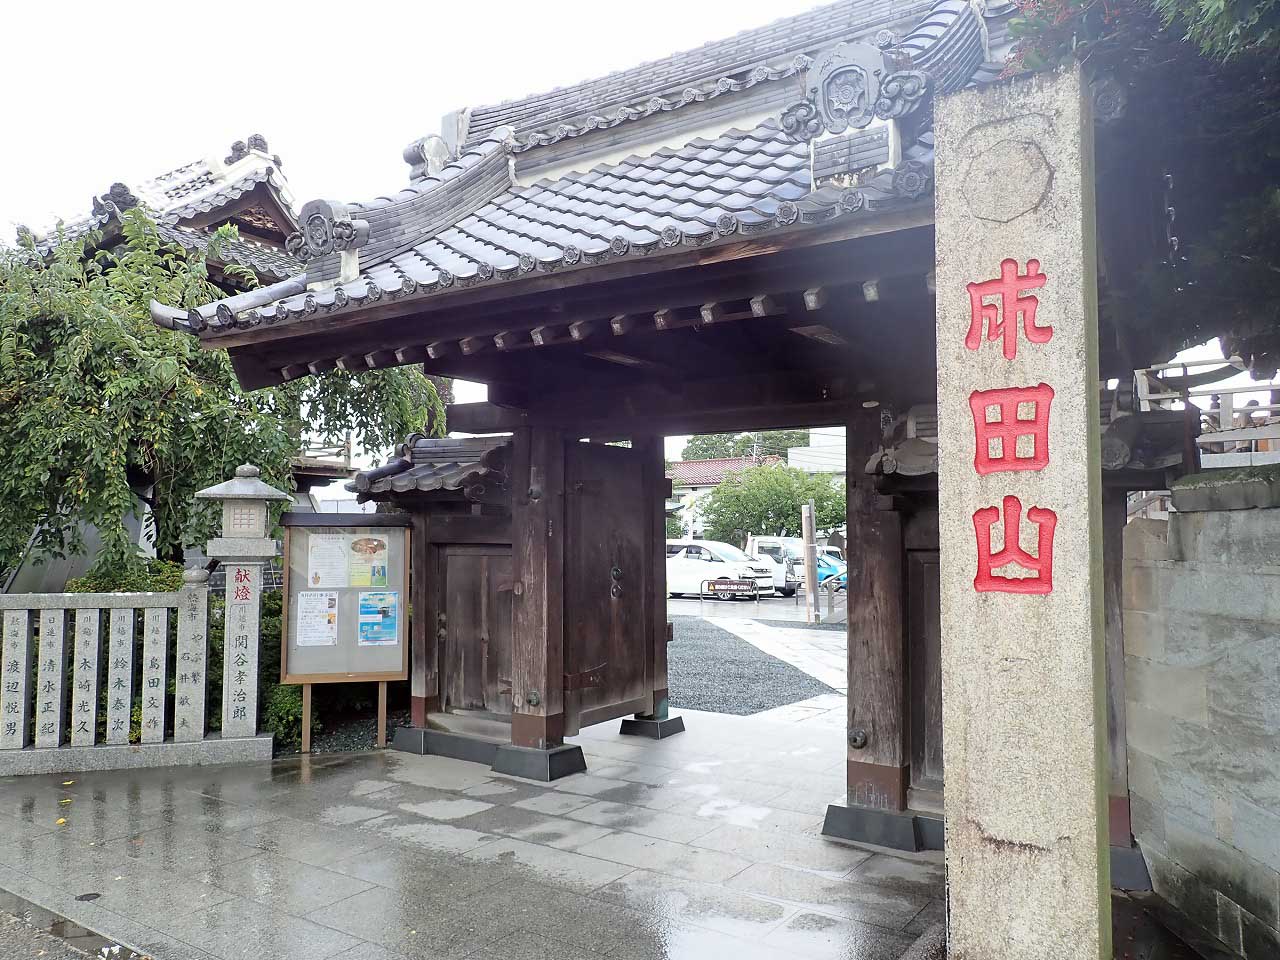 川越の有名な神社仏閣「成田山川越別院」